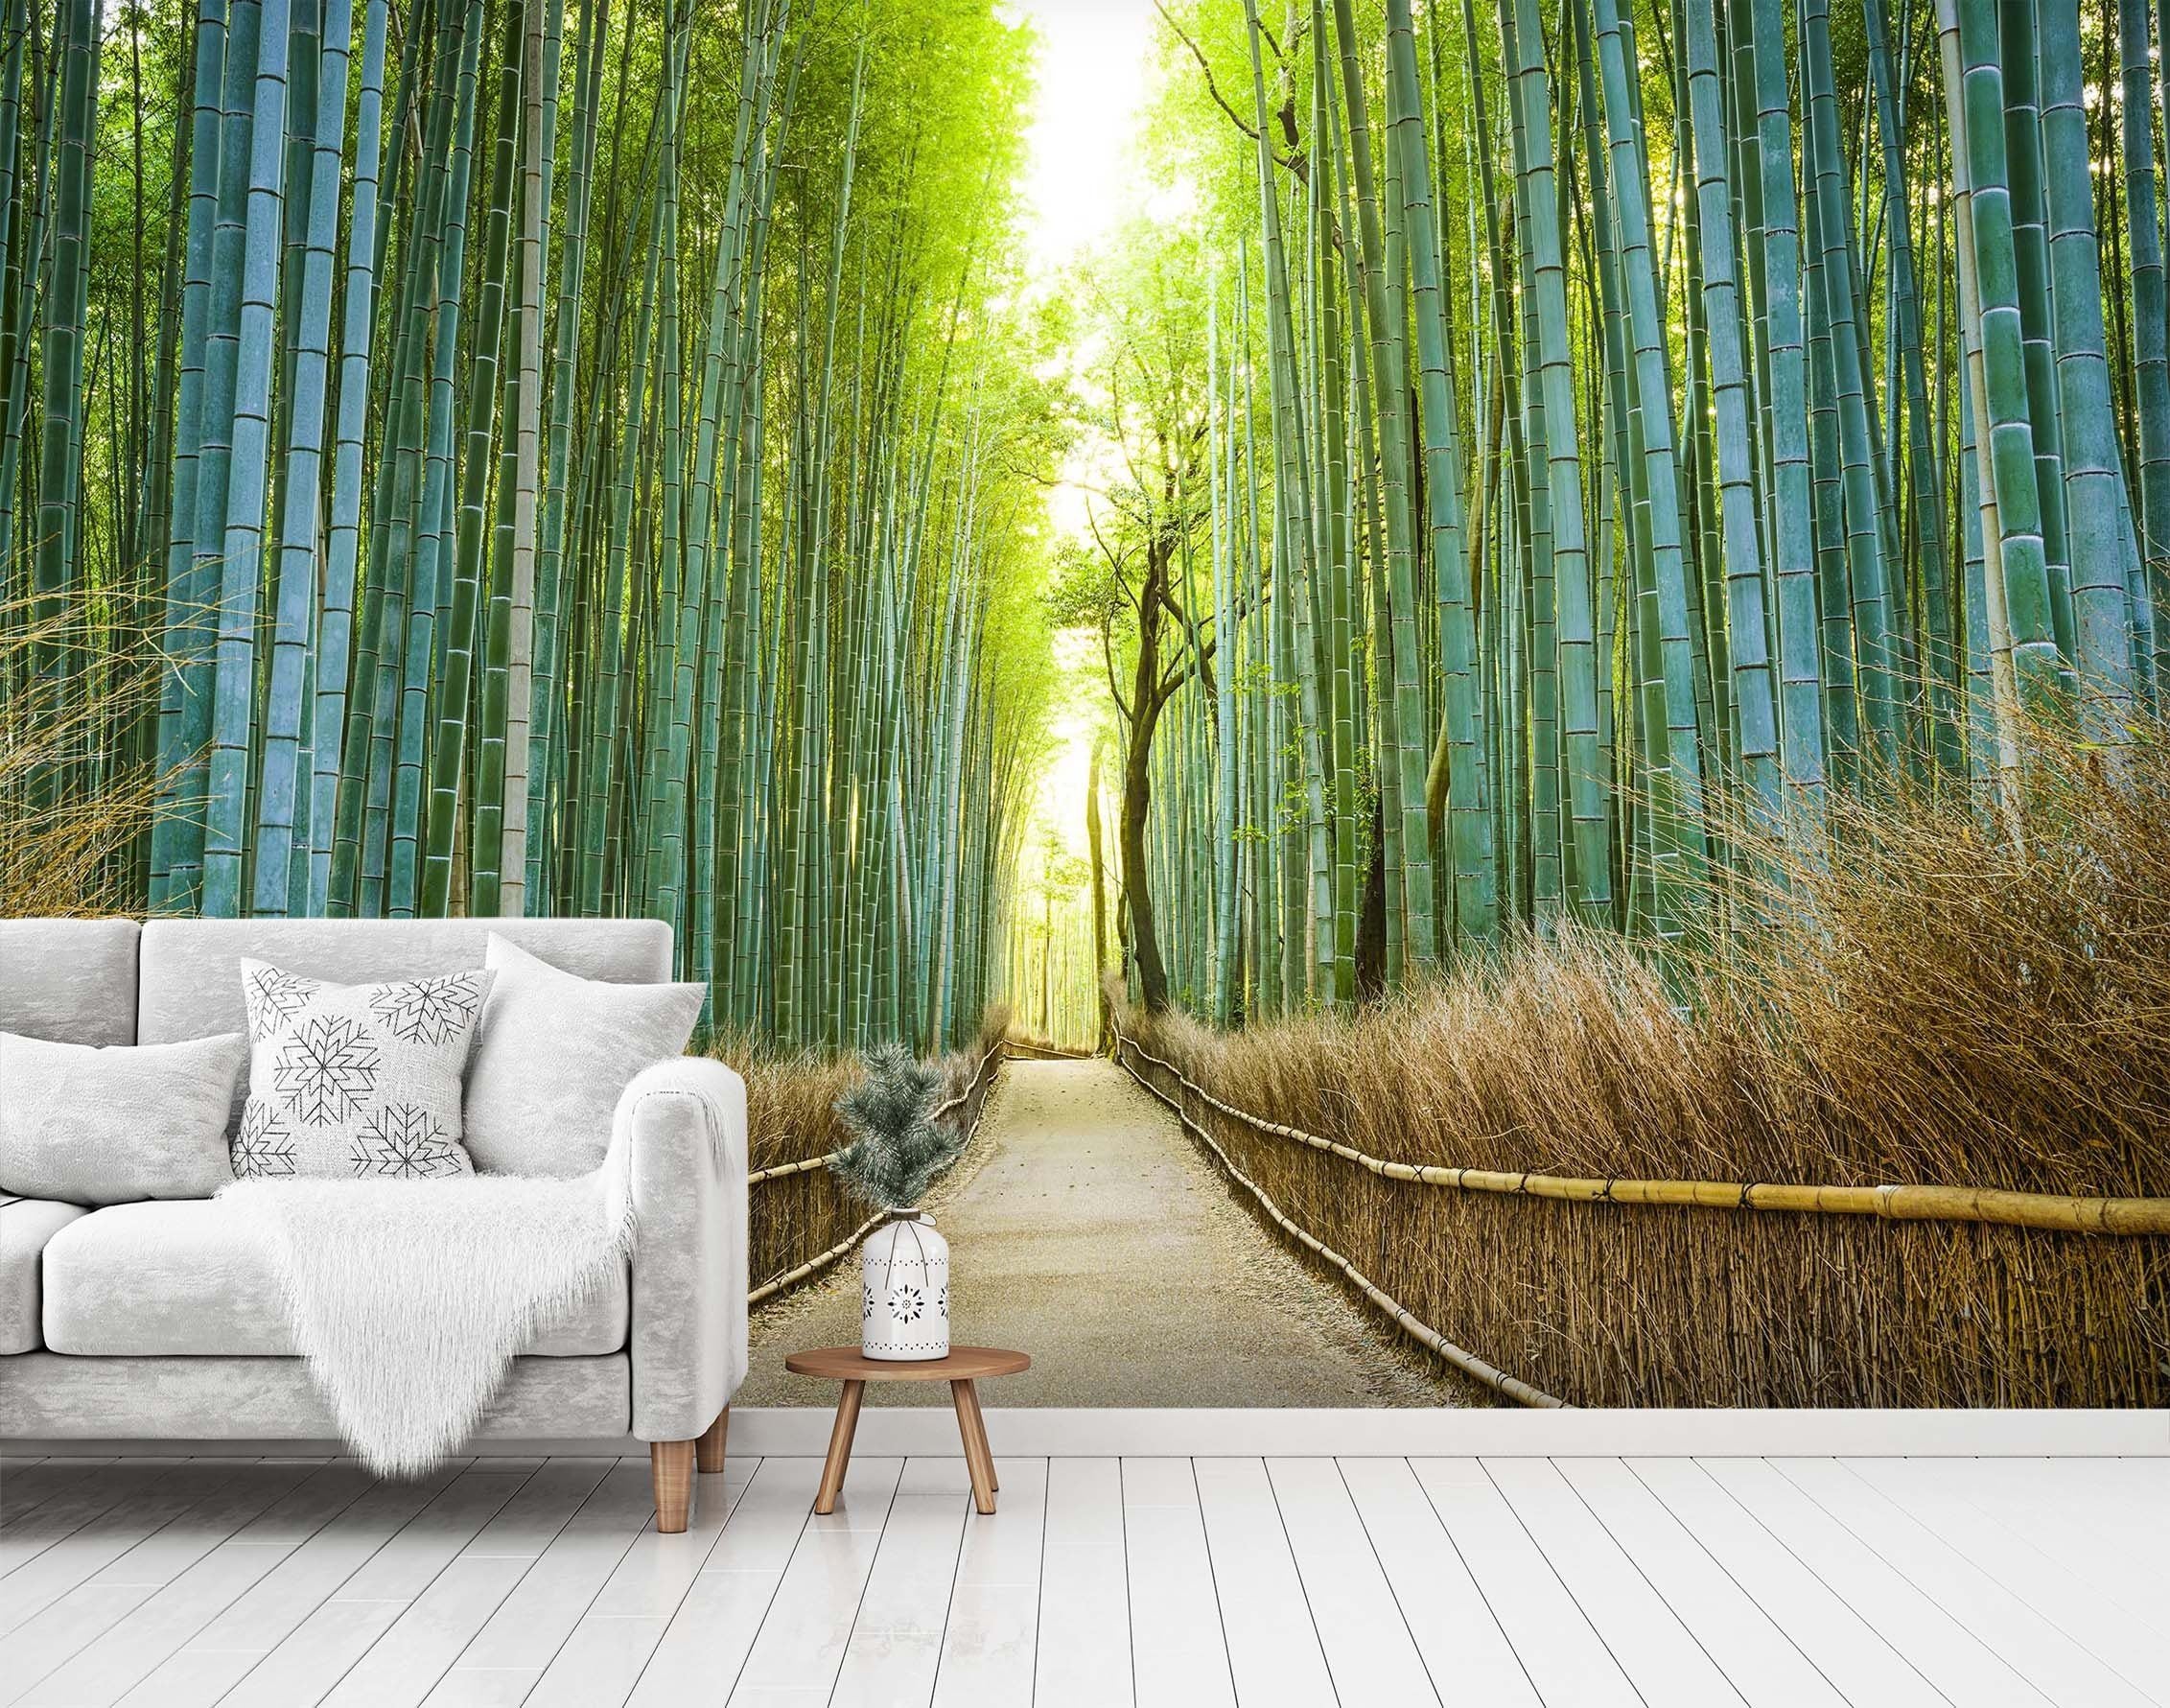 3D Bamboo Forest 1526 Wall Murals Wallpaper AJ Wallpaper 2 